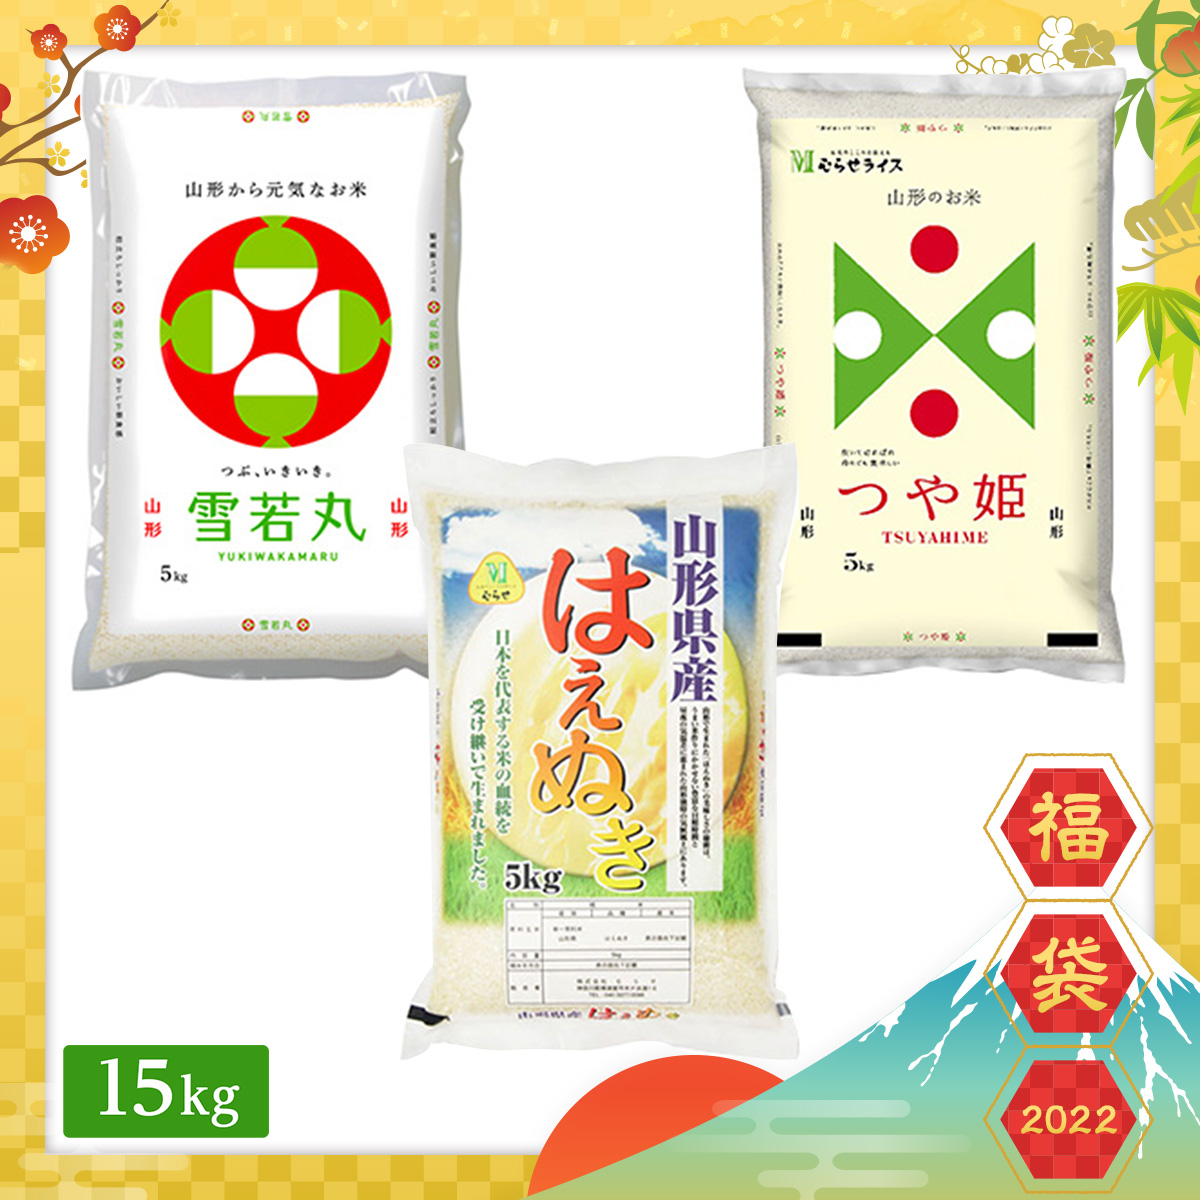 【2022年福袋】山形県産 ブランド米 食べ比べセット 15kg(5kg×3袋)